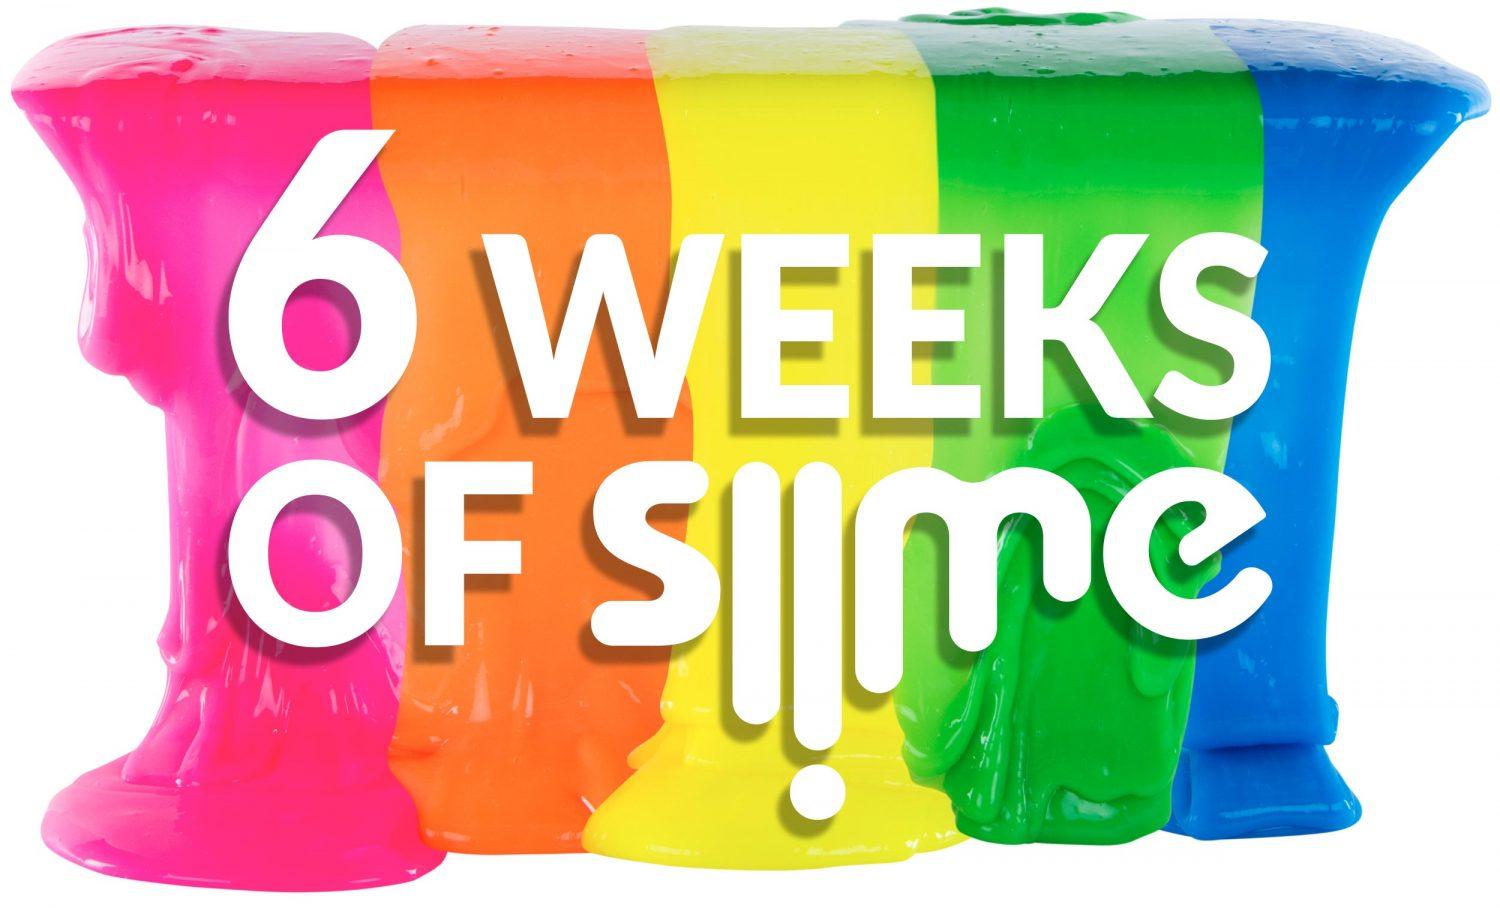 Block of the Week: Slime